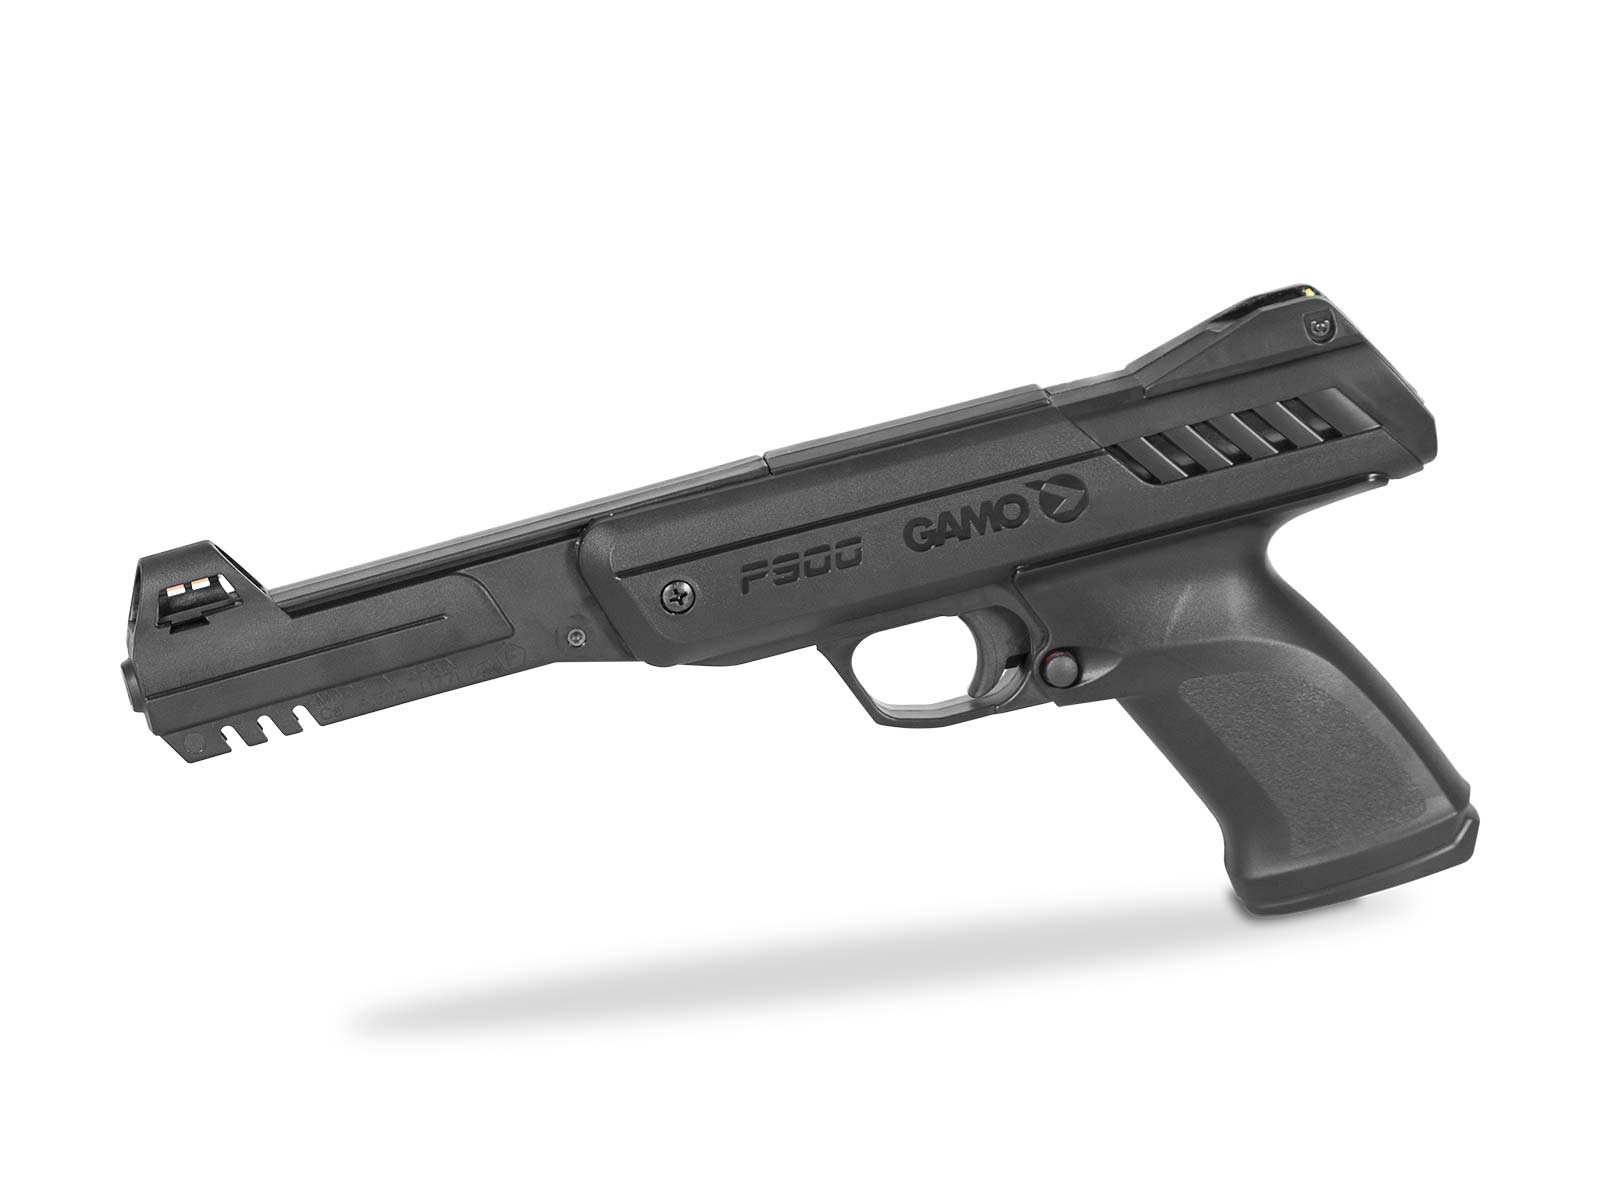 P-900 pistol